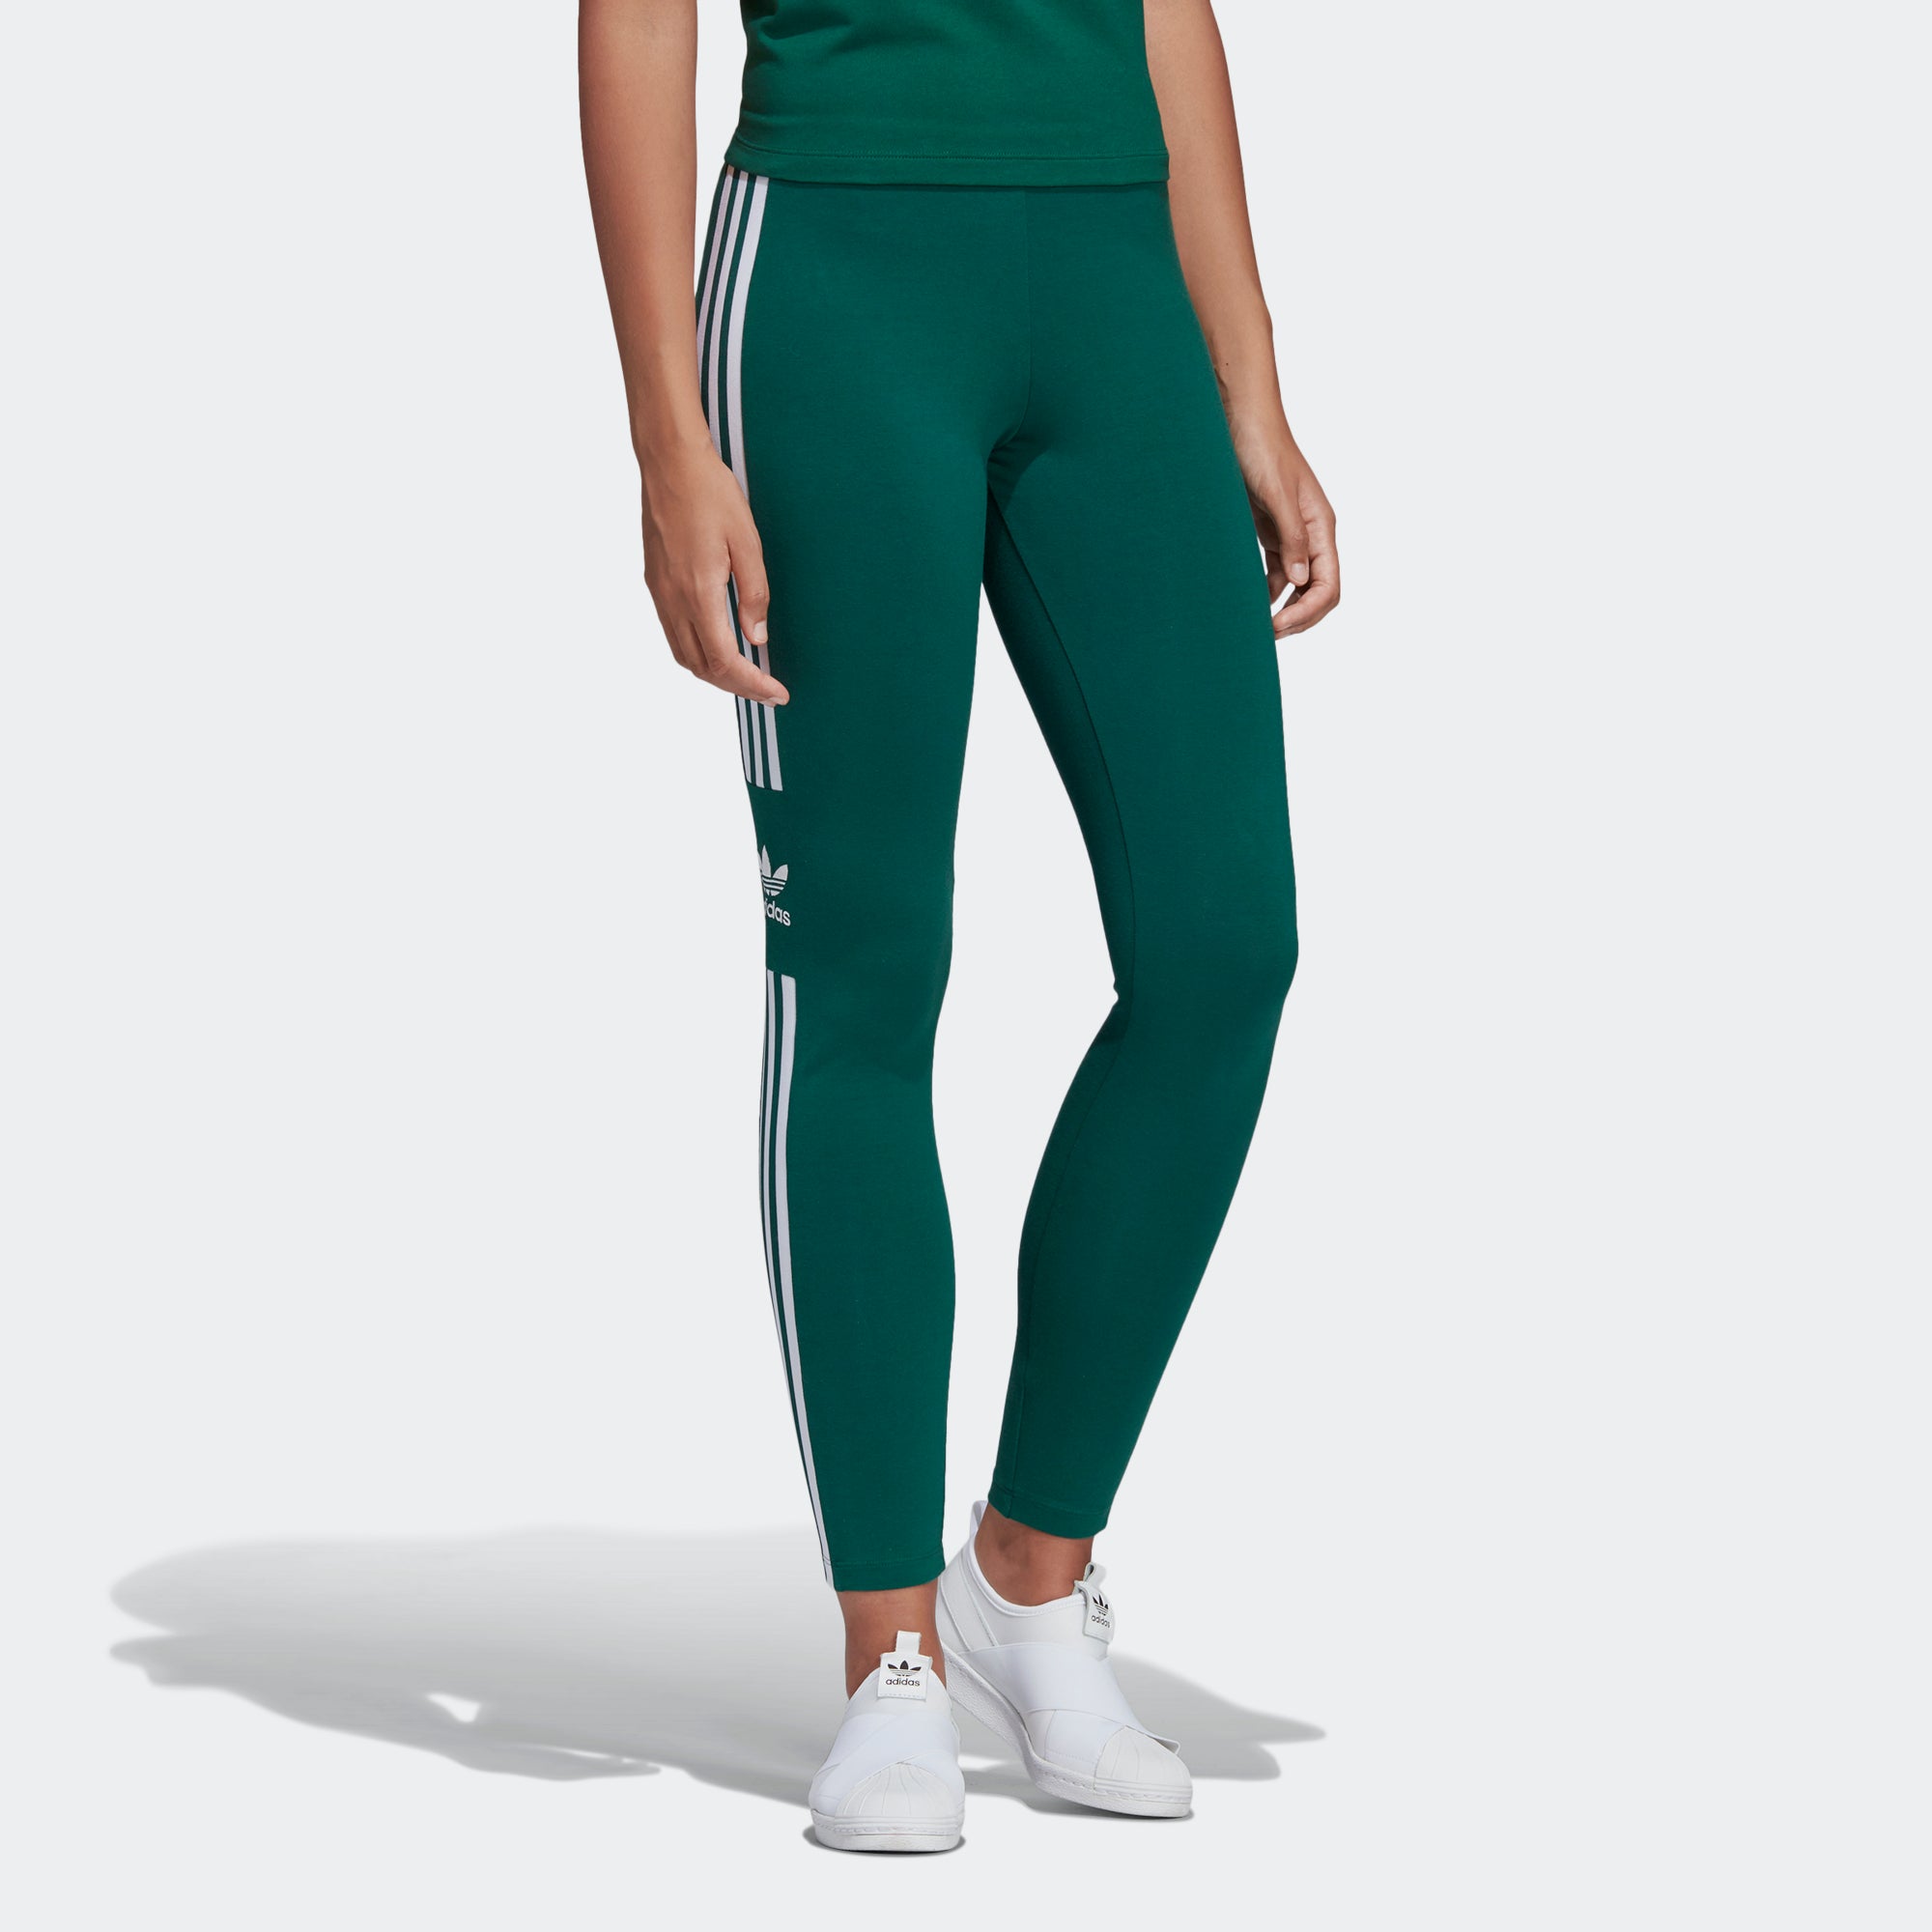 collegiate green adidas leggings